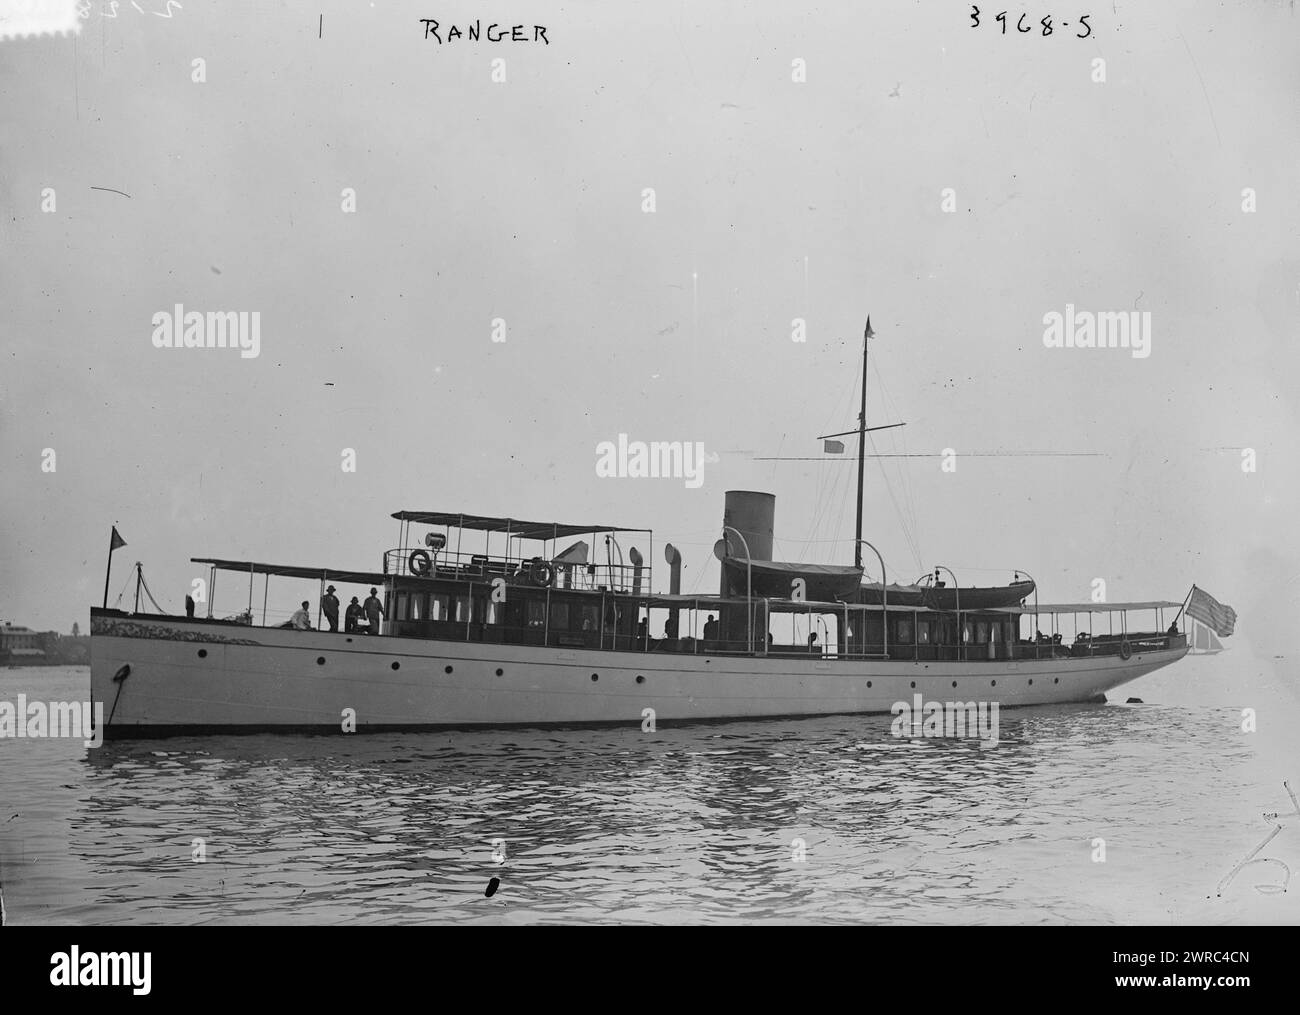 RANGER, Foto zeigt die Yacht Ranger, während der Woche der Marinemanöver in New York im September 1916. Das Boot wurde 1917 zum U.S. Navy Ranger, einem Patrouillenschiff der US Navy, 1916. September, Glass negative, 1 negative: Glass Stockfoto